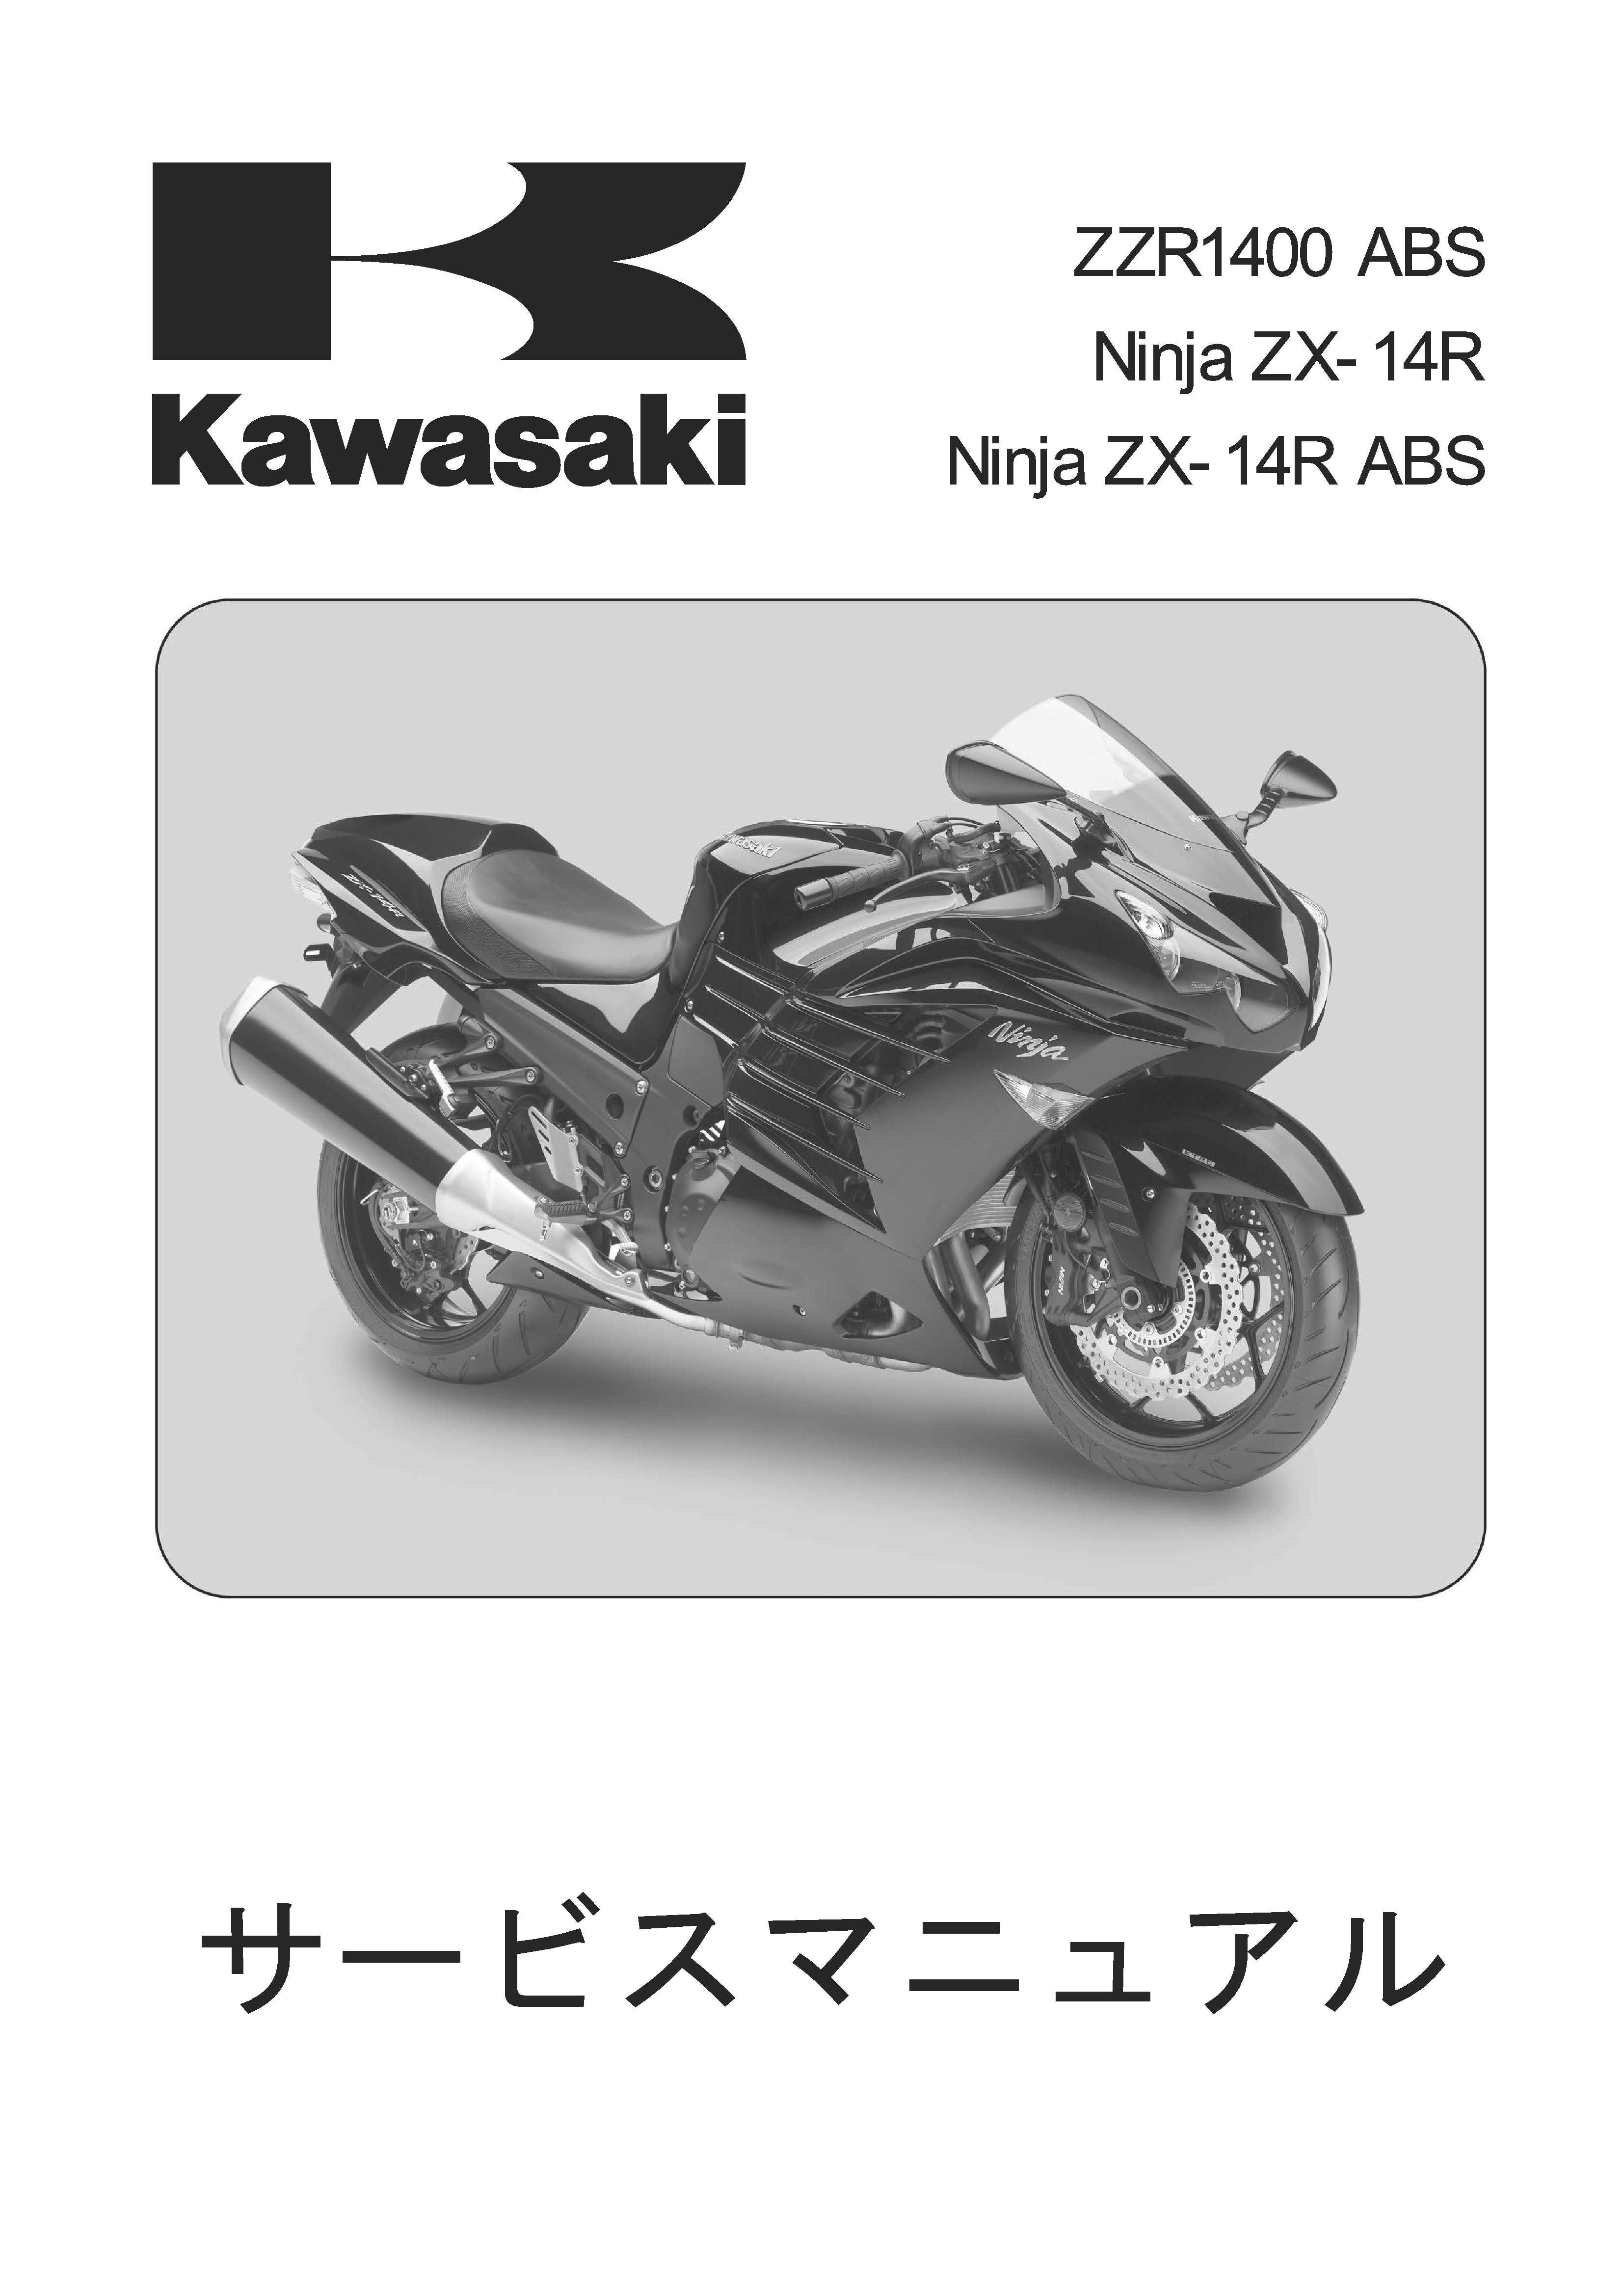 kawasaki ZX-14R サービスマニュアルカタログ/マニュアル - カタログ 